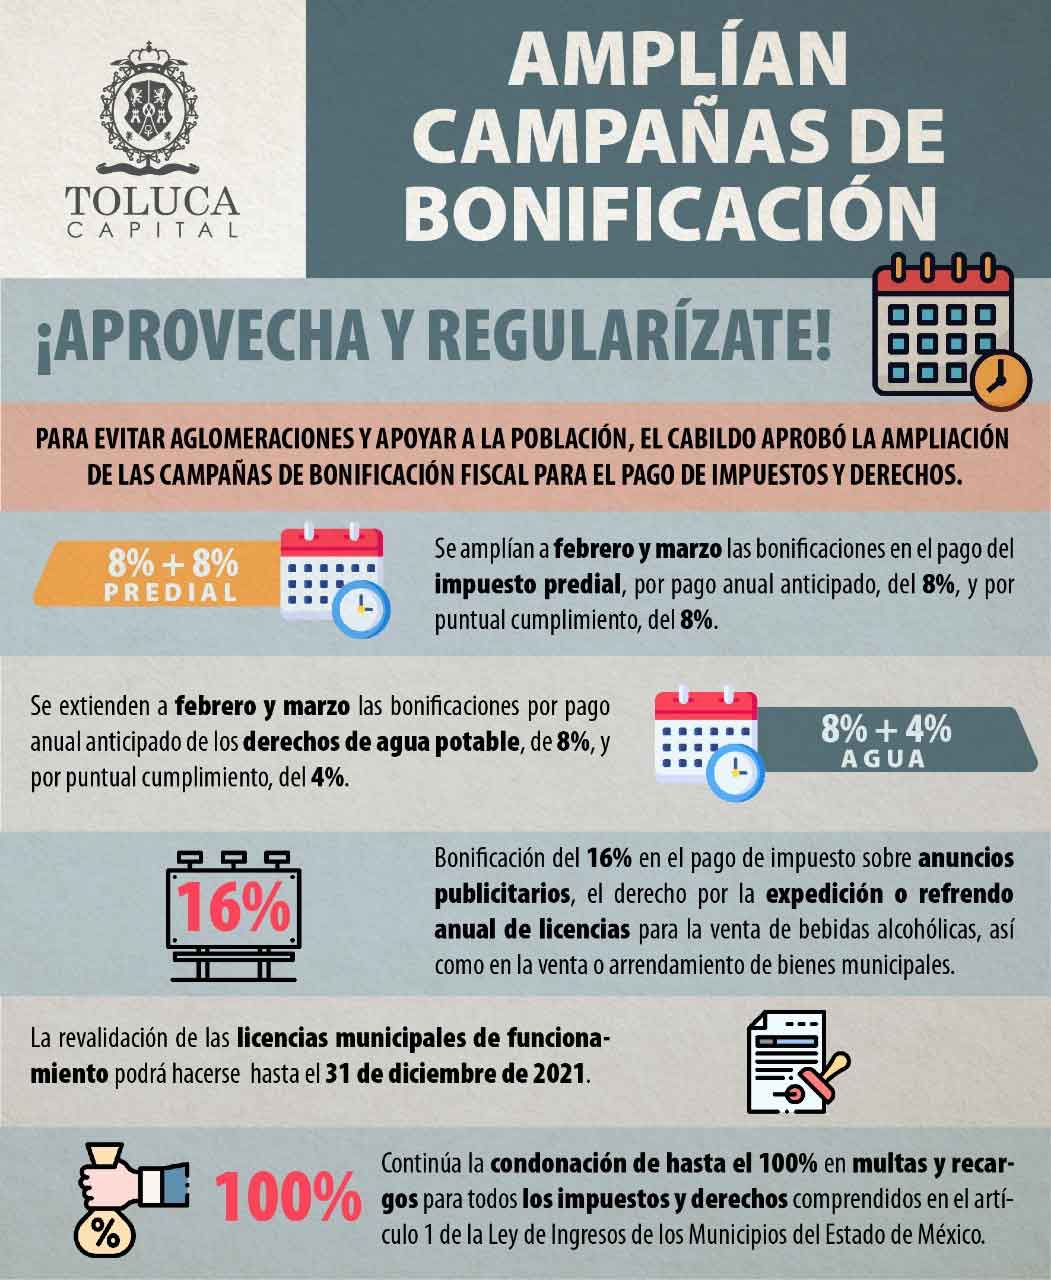 El ayuntamiento de Toluca ampliará las campañas de bonificación fiscal por pago anual anticipado de impuestos como predial y servicios de agua potable